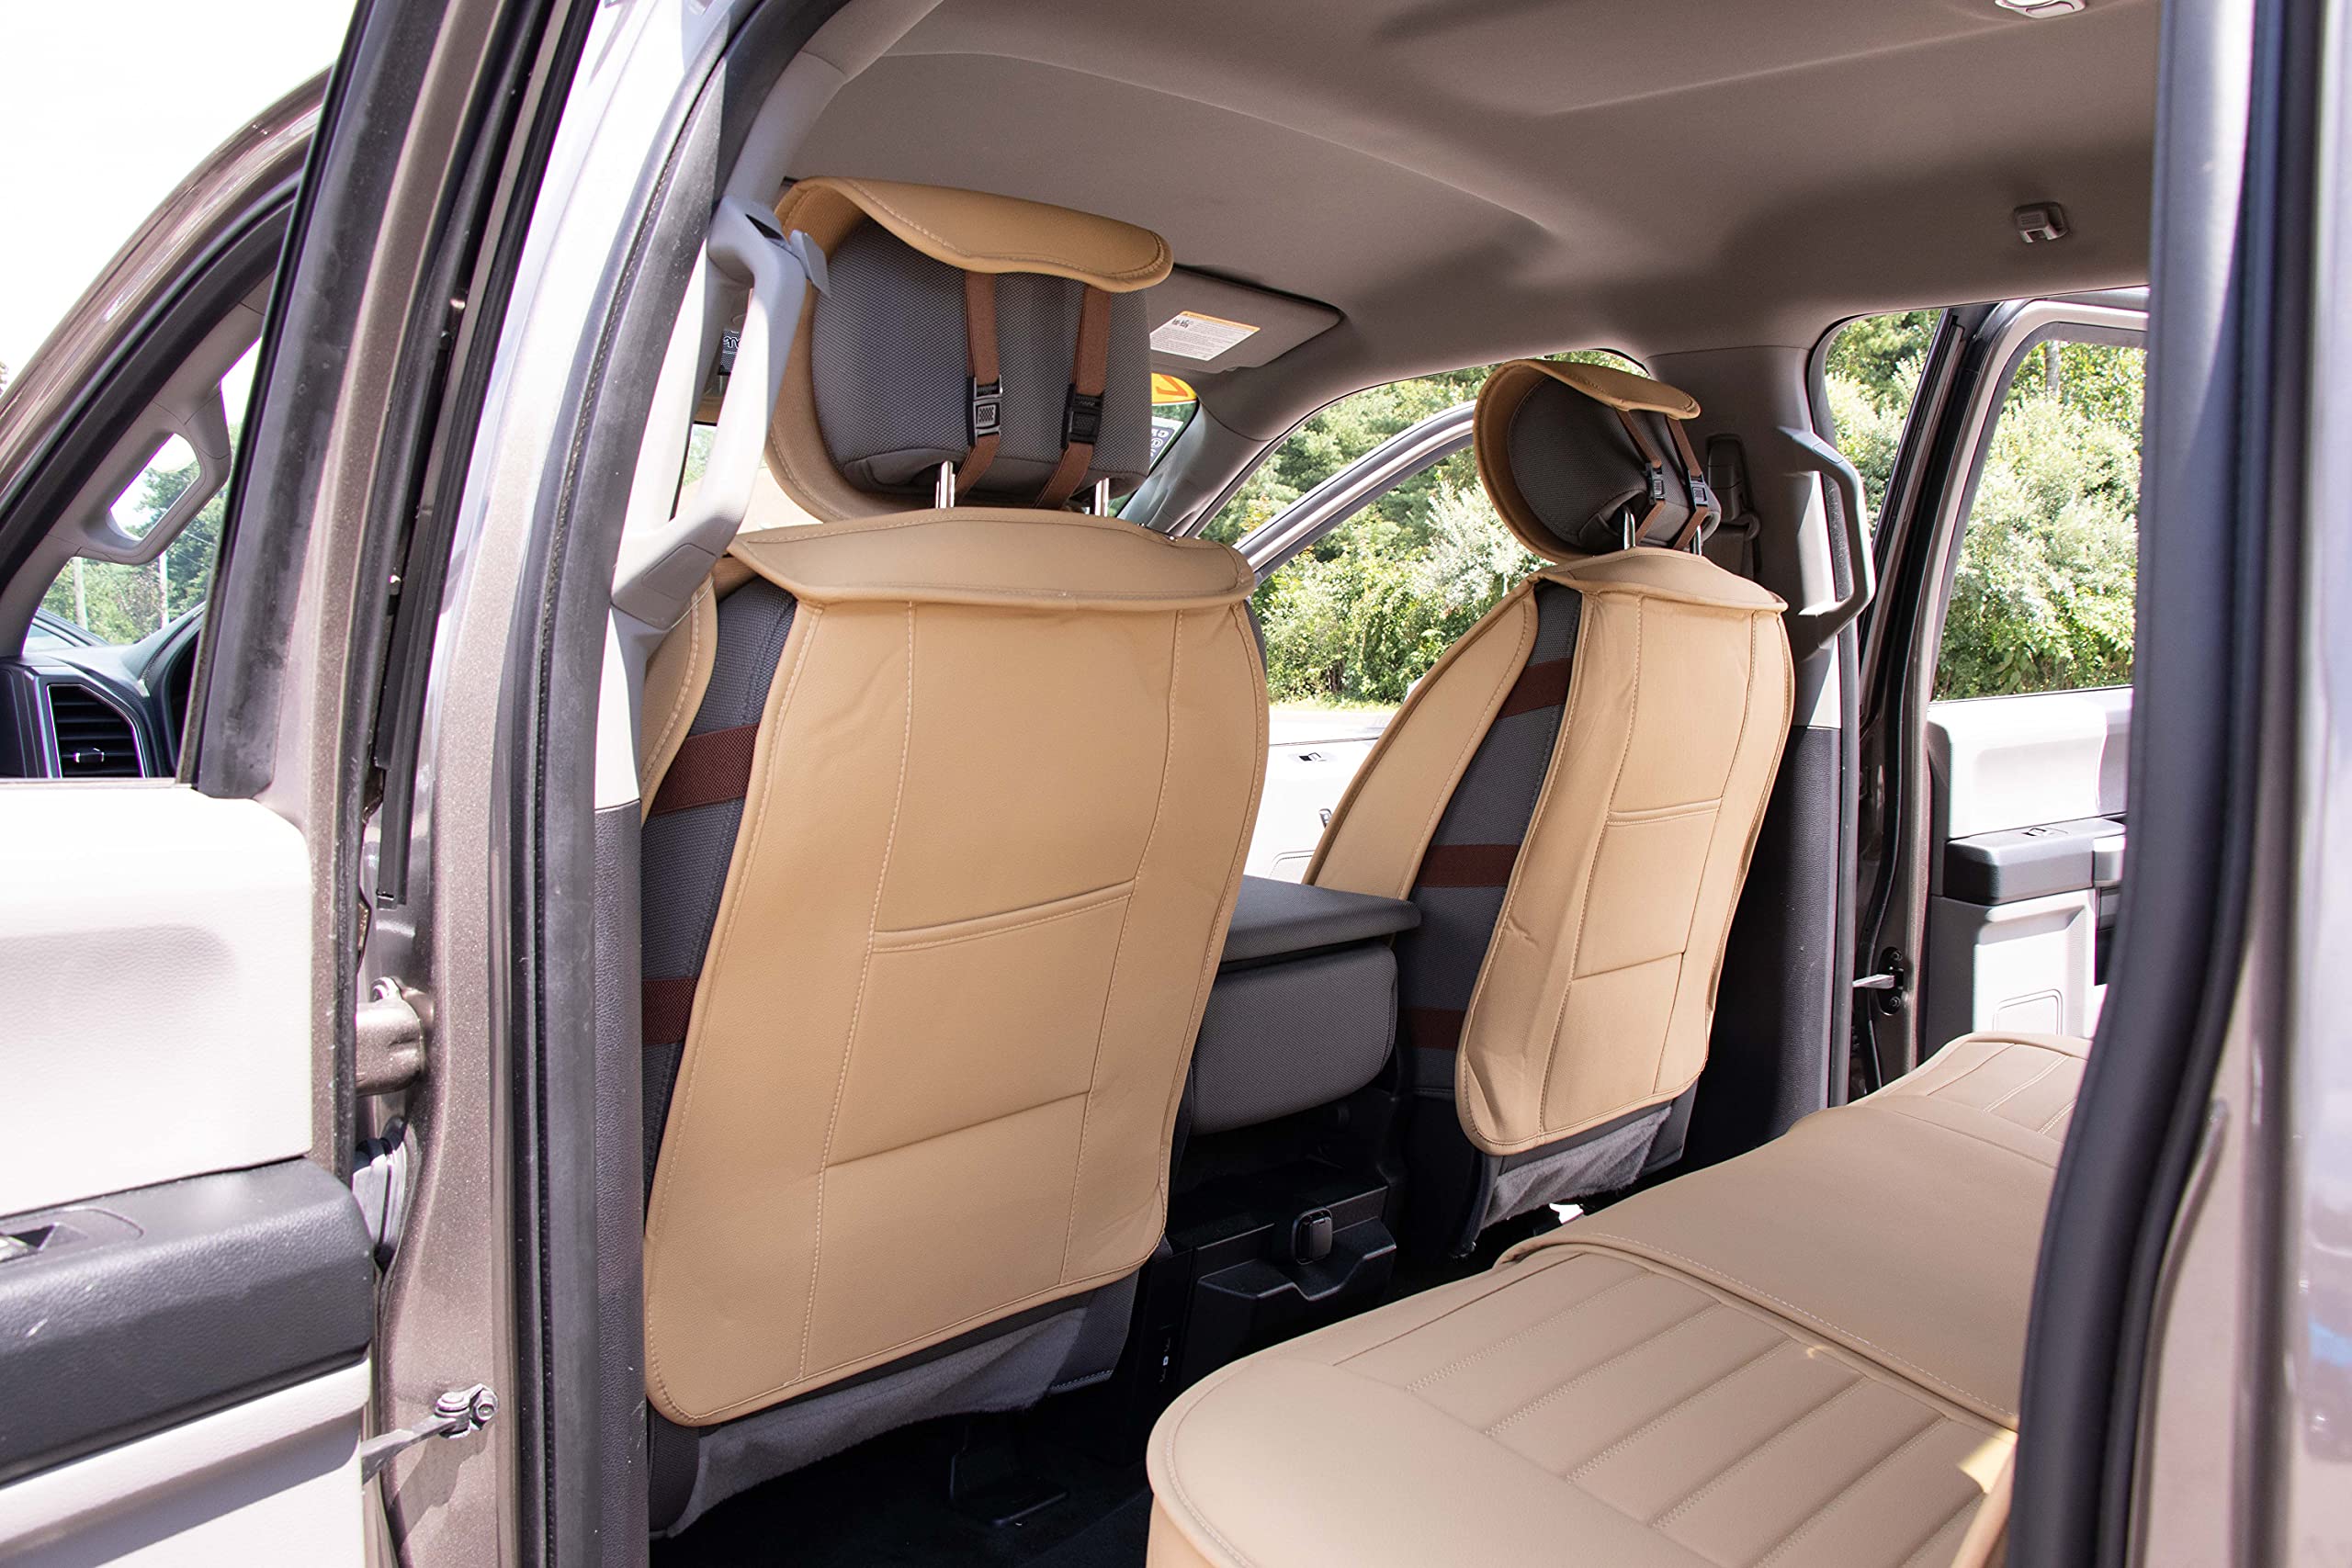 Bọc ghế ô tô OASIS AUTO: Bộ bọc ghế ô tô OASIS AUTO sẽ giúp bạn bảo vệ ghế ô tô khỏi bụi bẩn, dầu mỡ và các vết trầy xước. Thiết kế thông minh và dễ dàng lắp đặt, sản phẩm này thực sự là một lựa chọn tuyệt vời cho việc bảo vệ ghế ô tô của bạn. Hãy xem hình ảnh để khám phá thêm về sản phẩm bọc ghế ô tô này.